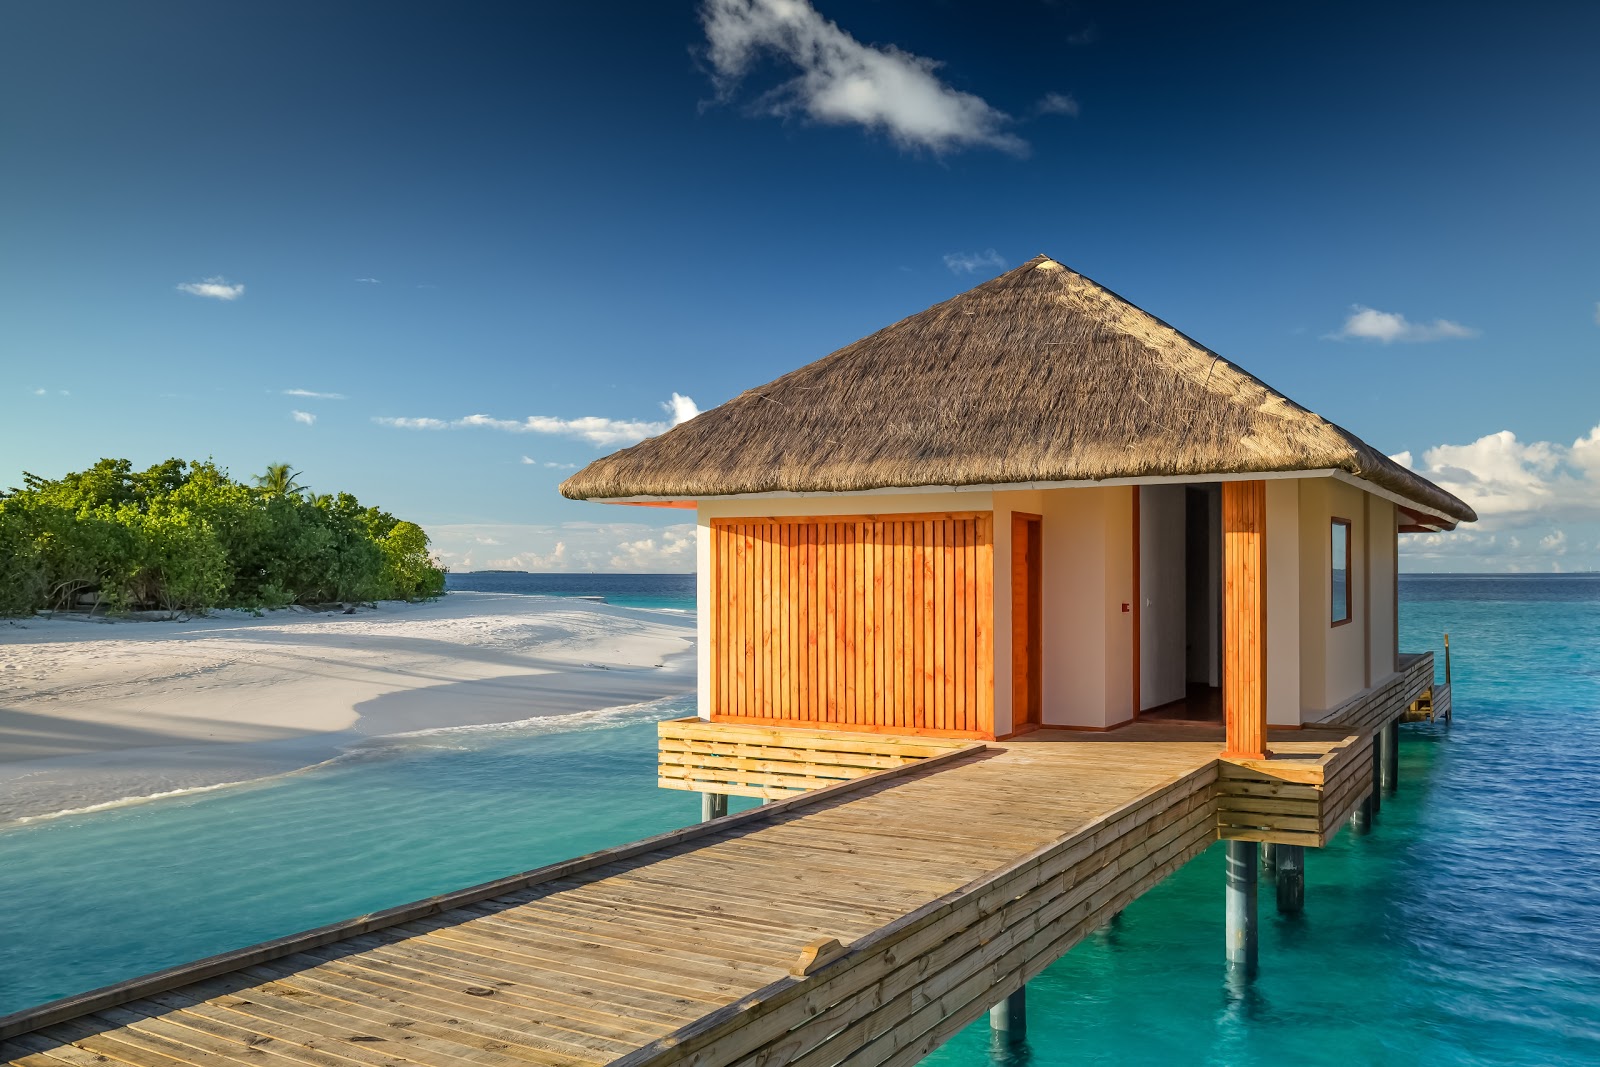 Foto af Kudafushi Resort island - populært sted blandt afslapningskendere